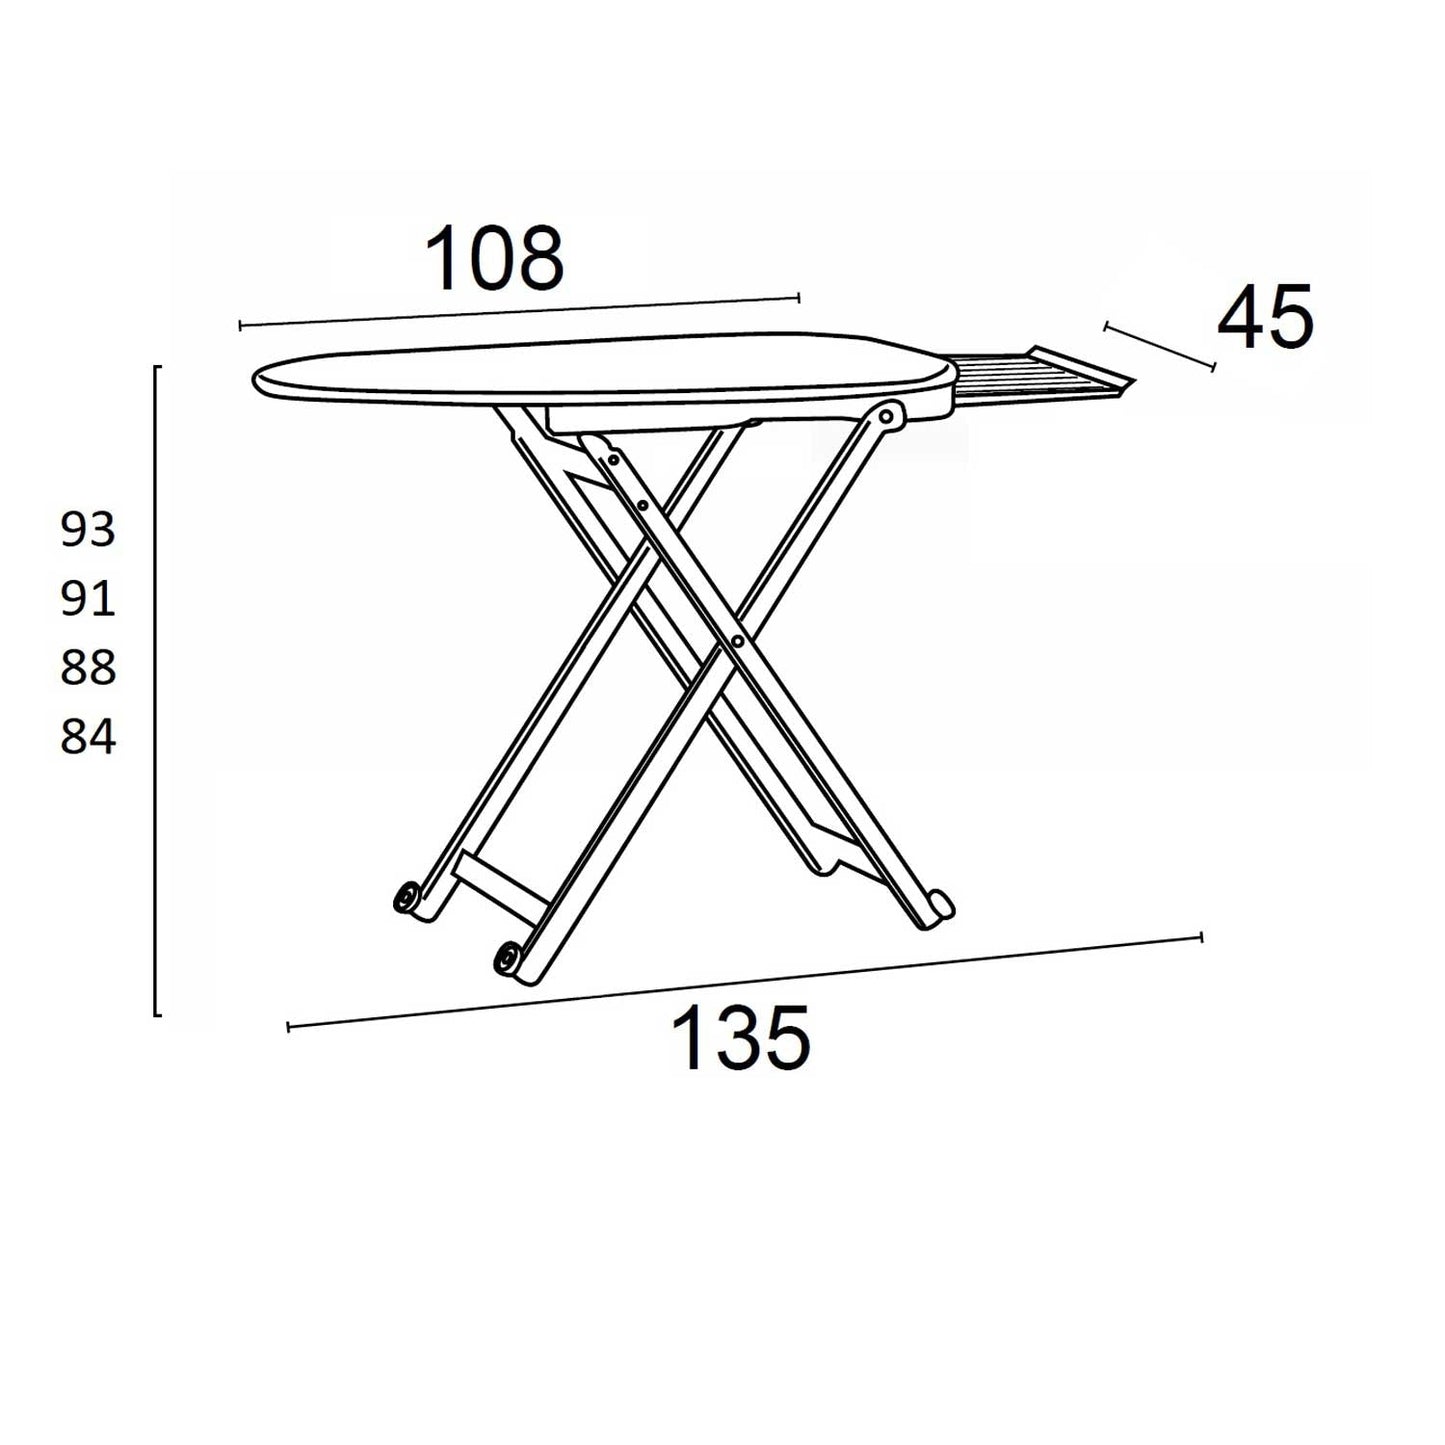 Table à repasser STIROLIGHT, hauteur réglable : 84-88-91-93 cm, roulettes à la base, repose-fer coulissant - Couleur Cerise, ARIT, 3